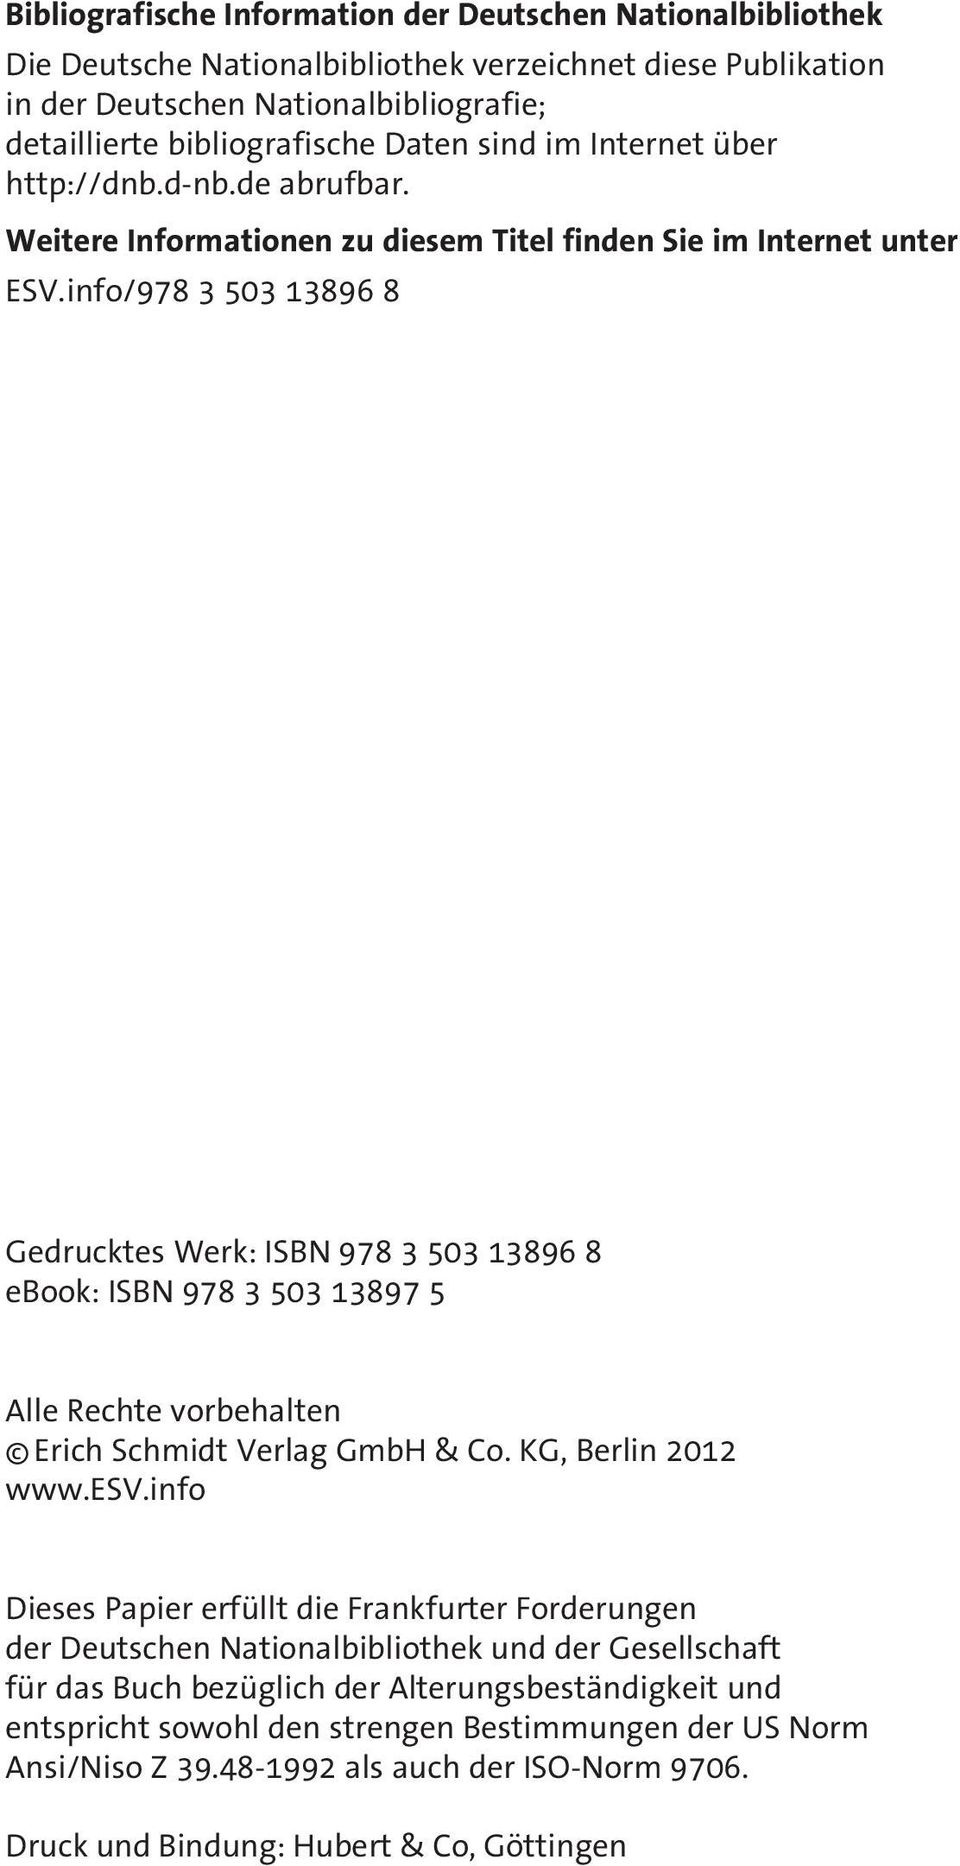 info/978 3 503 13896 8 Gedrucktes Werk: ISBN 978 3 503 13896 8 ebook: ISBN 978 3 503 13897 5 Alle Rechte vorbehalten Erich Schmidt Verlag GmbH & Co. KG, Berlin 2012 www.esv.